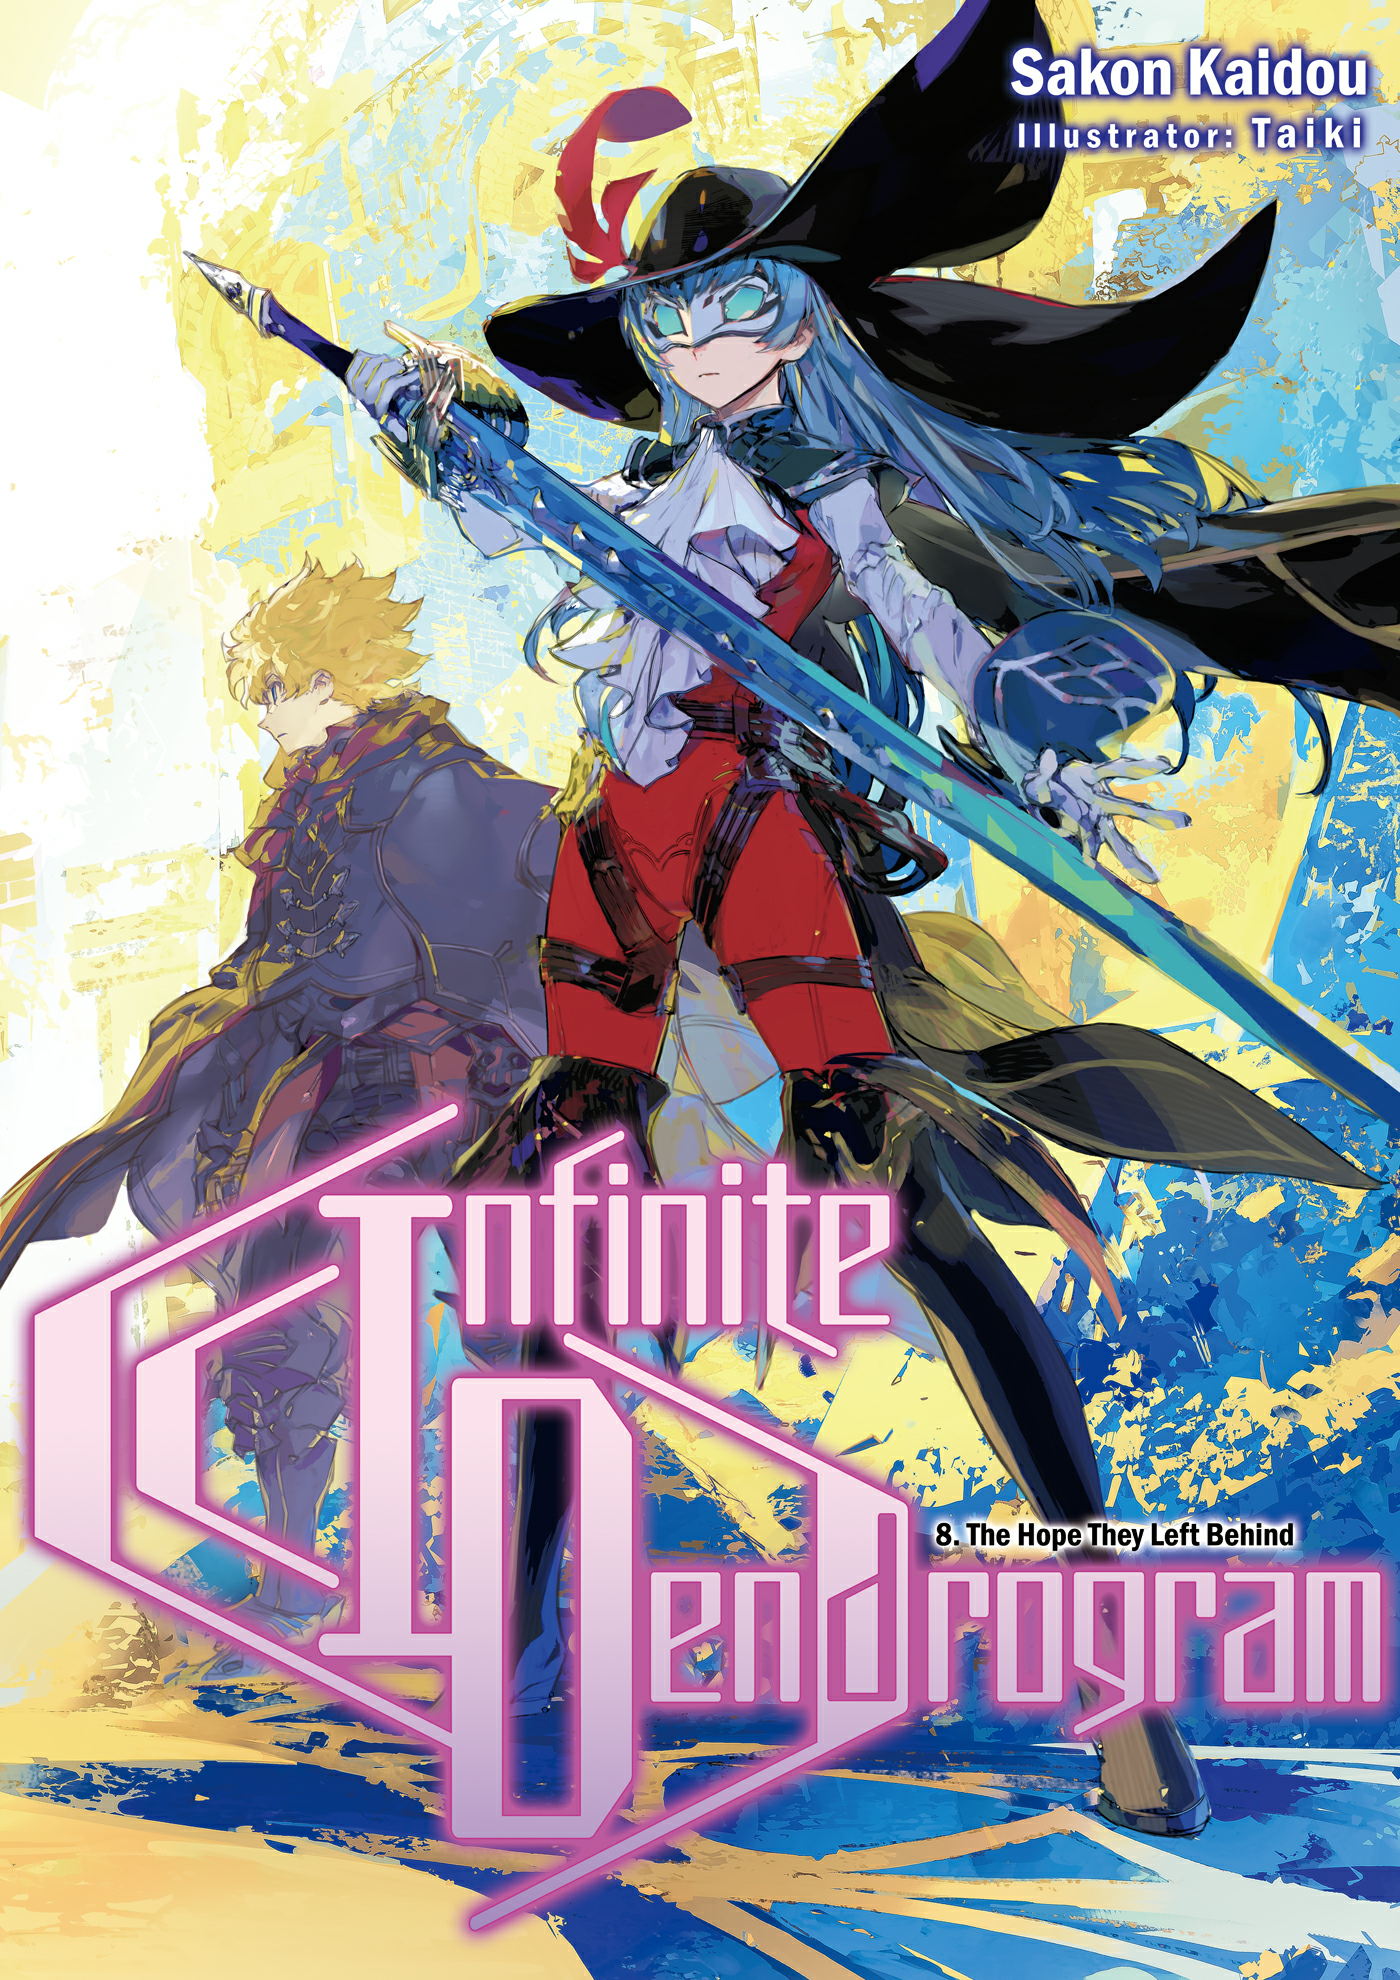 Infinite Dendrogram Light Novel Volume 13